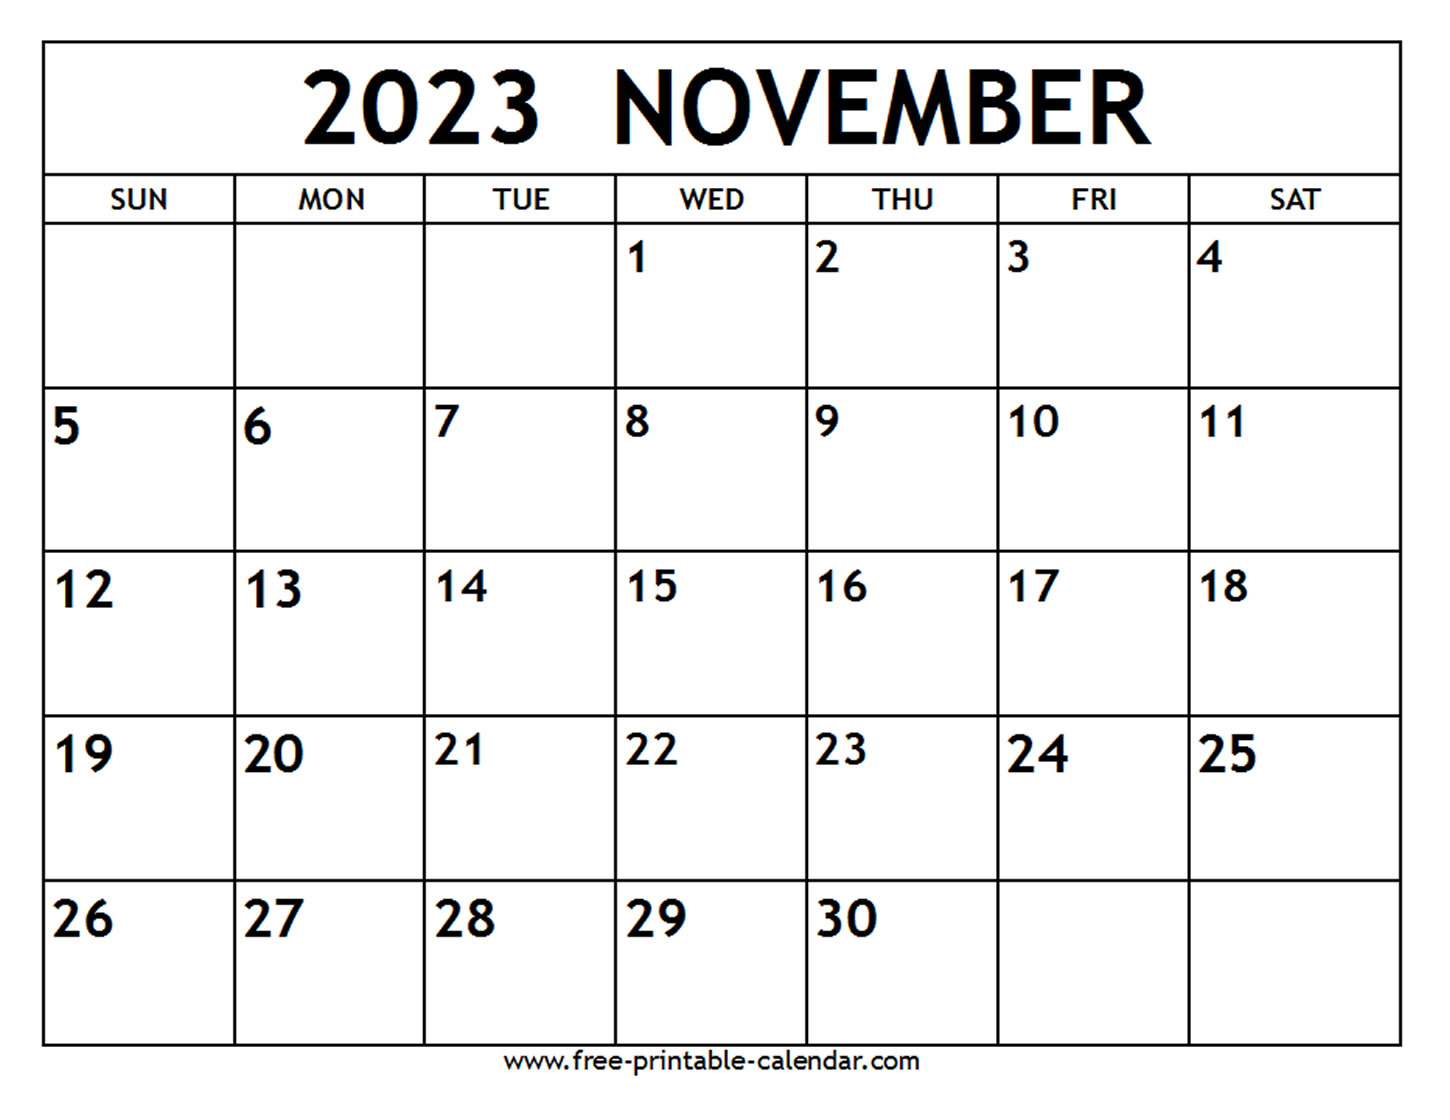 calendar-for-november-2023-get-calendar-2023-update